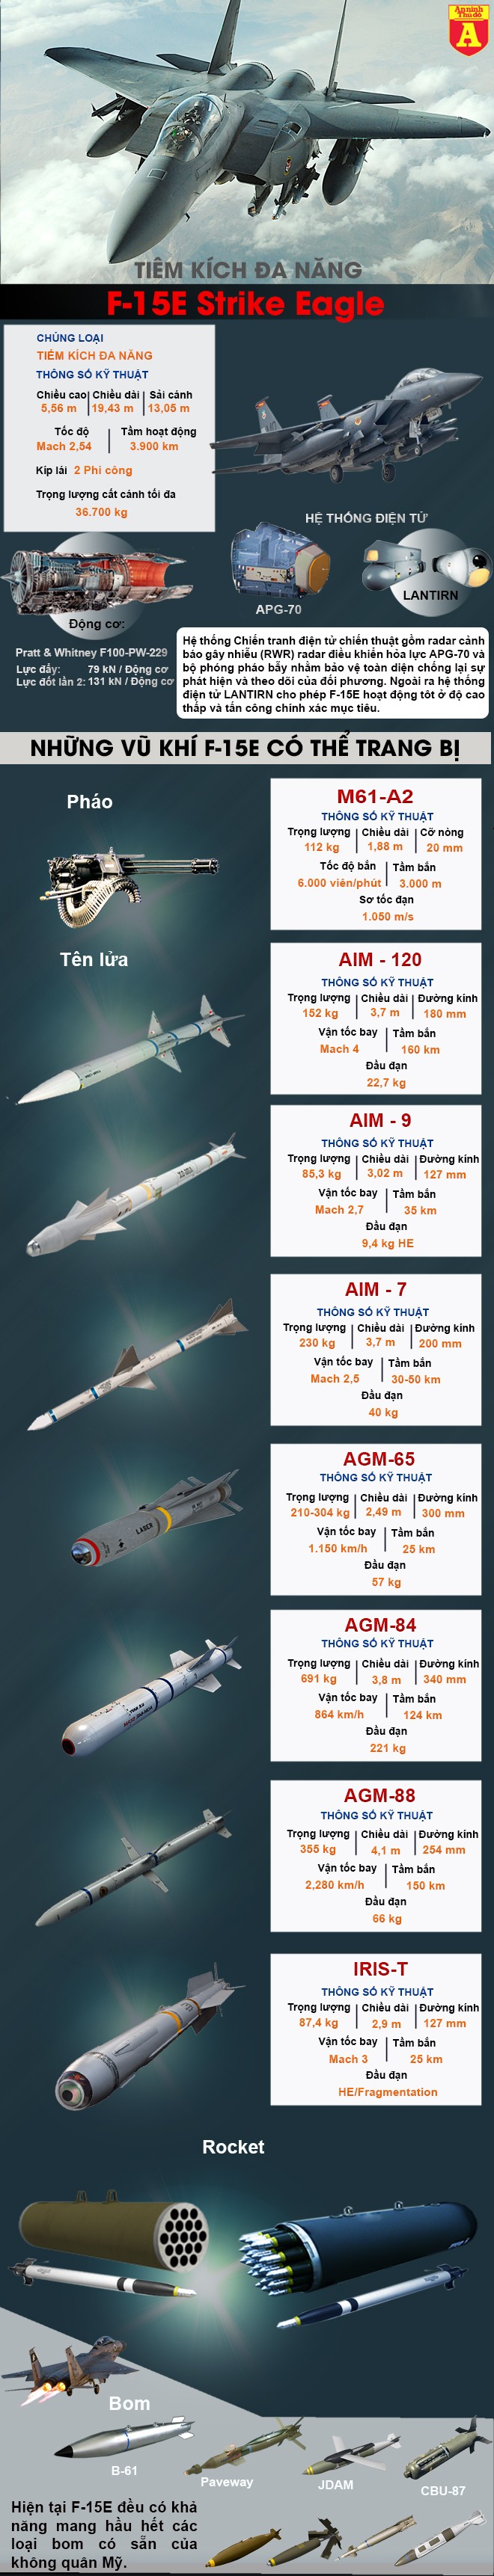 [Infographic] Phiến quân hồi giáo vừa dùng tên lửa của Nga bắn trúng máy bay F-15 do Mỹ sản xuất ảnh 4